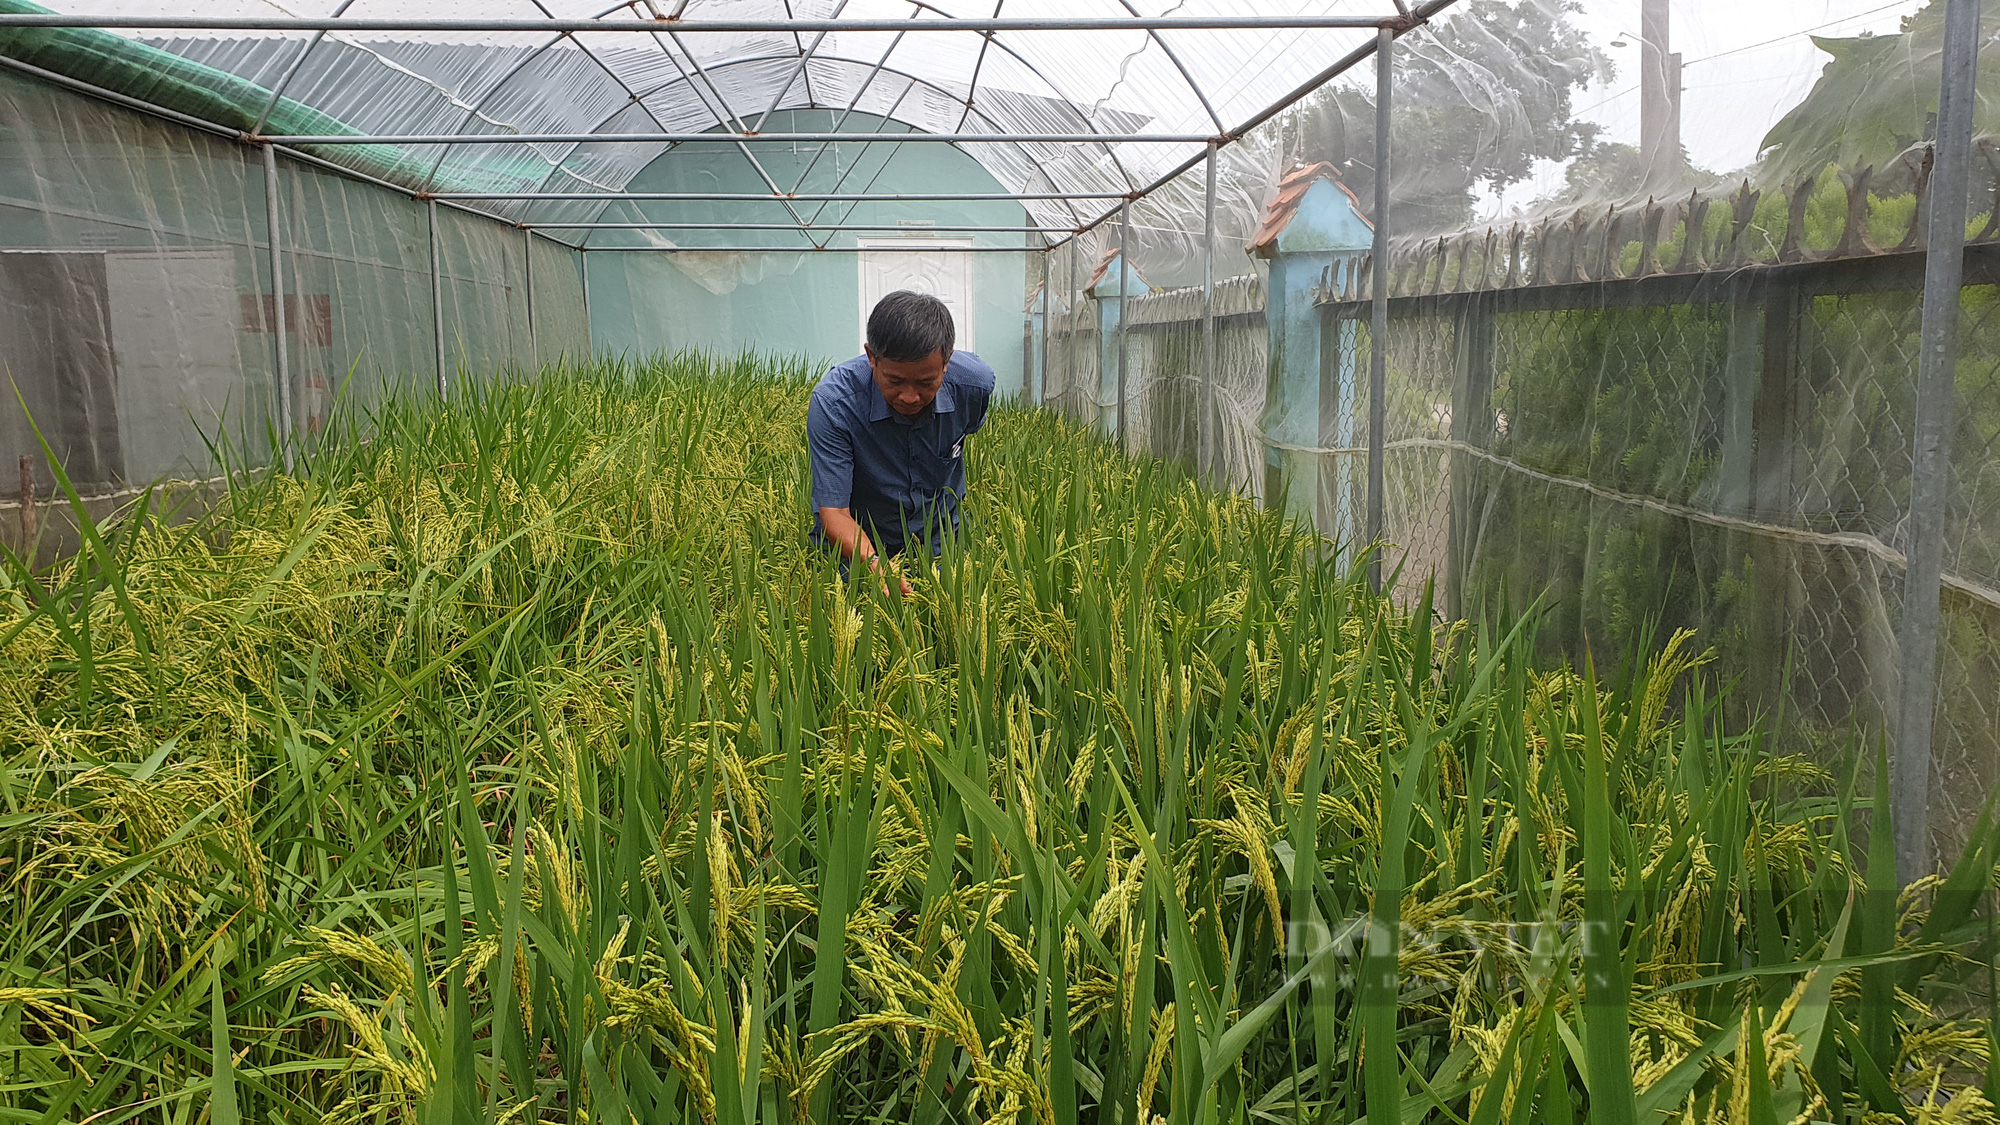 Nông dân xuất sắc 2021 ở Đồng Tháp là ông nông dân lai tạo giống lúa có dinh dưỡng rất cao - Ảnh 4.